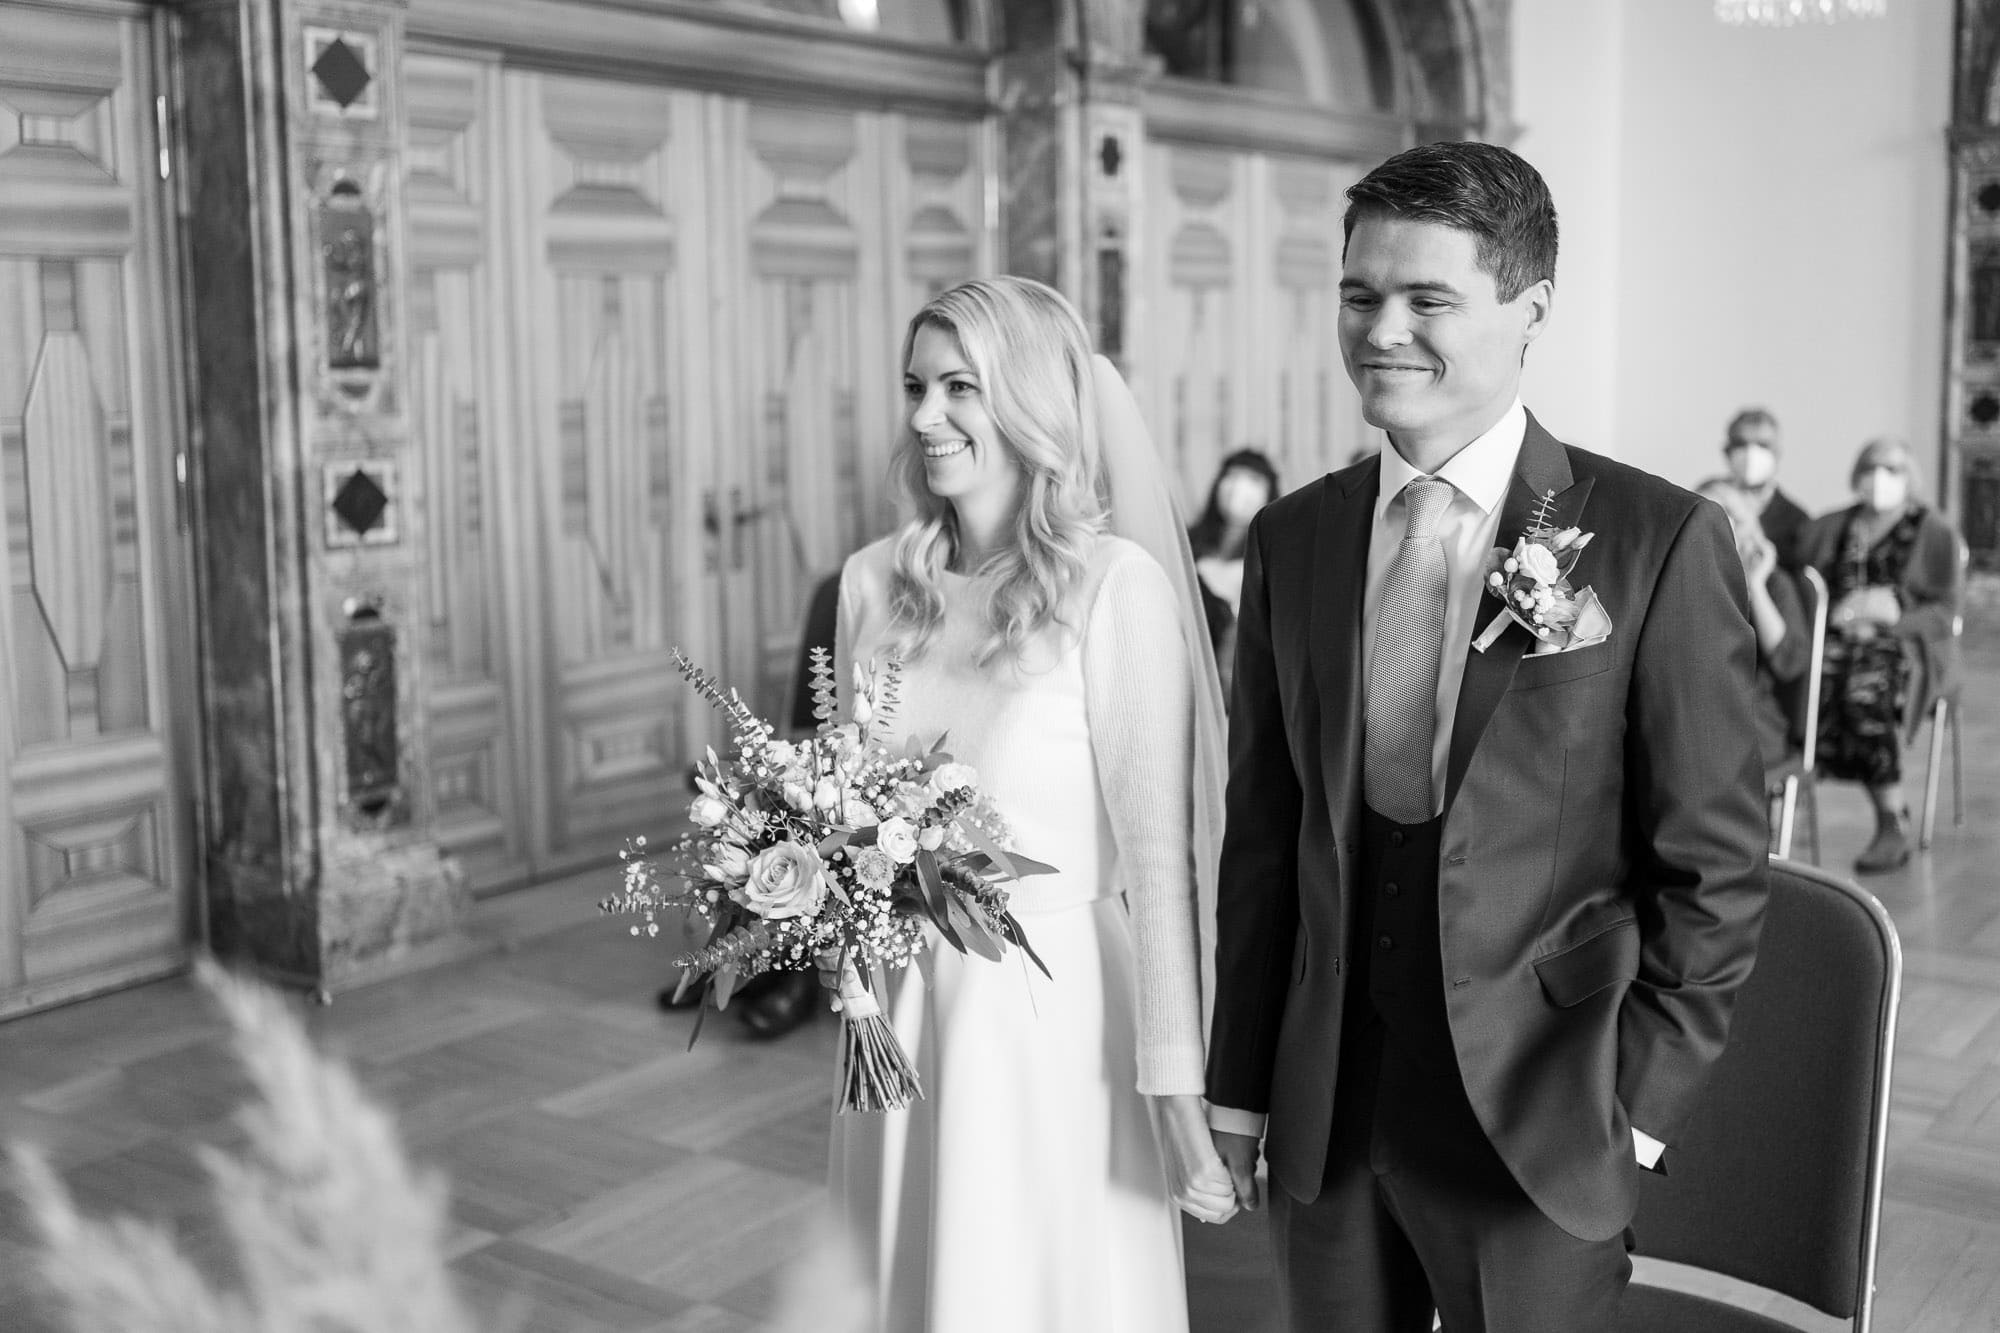 Standesamtliche Hochzeit im Kurhaus Wiesbaden schwarz weiß Foto Trauung